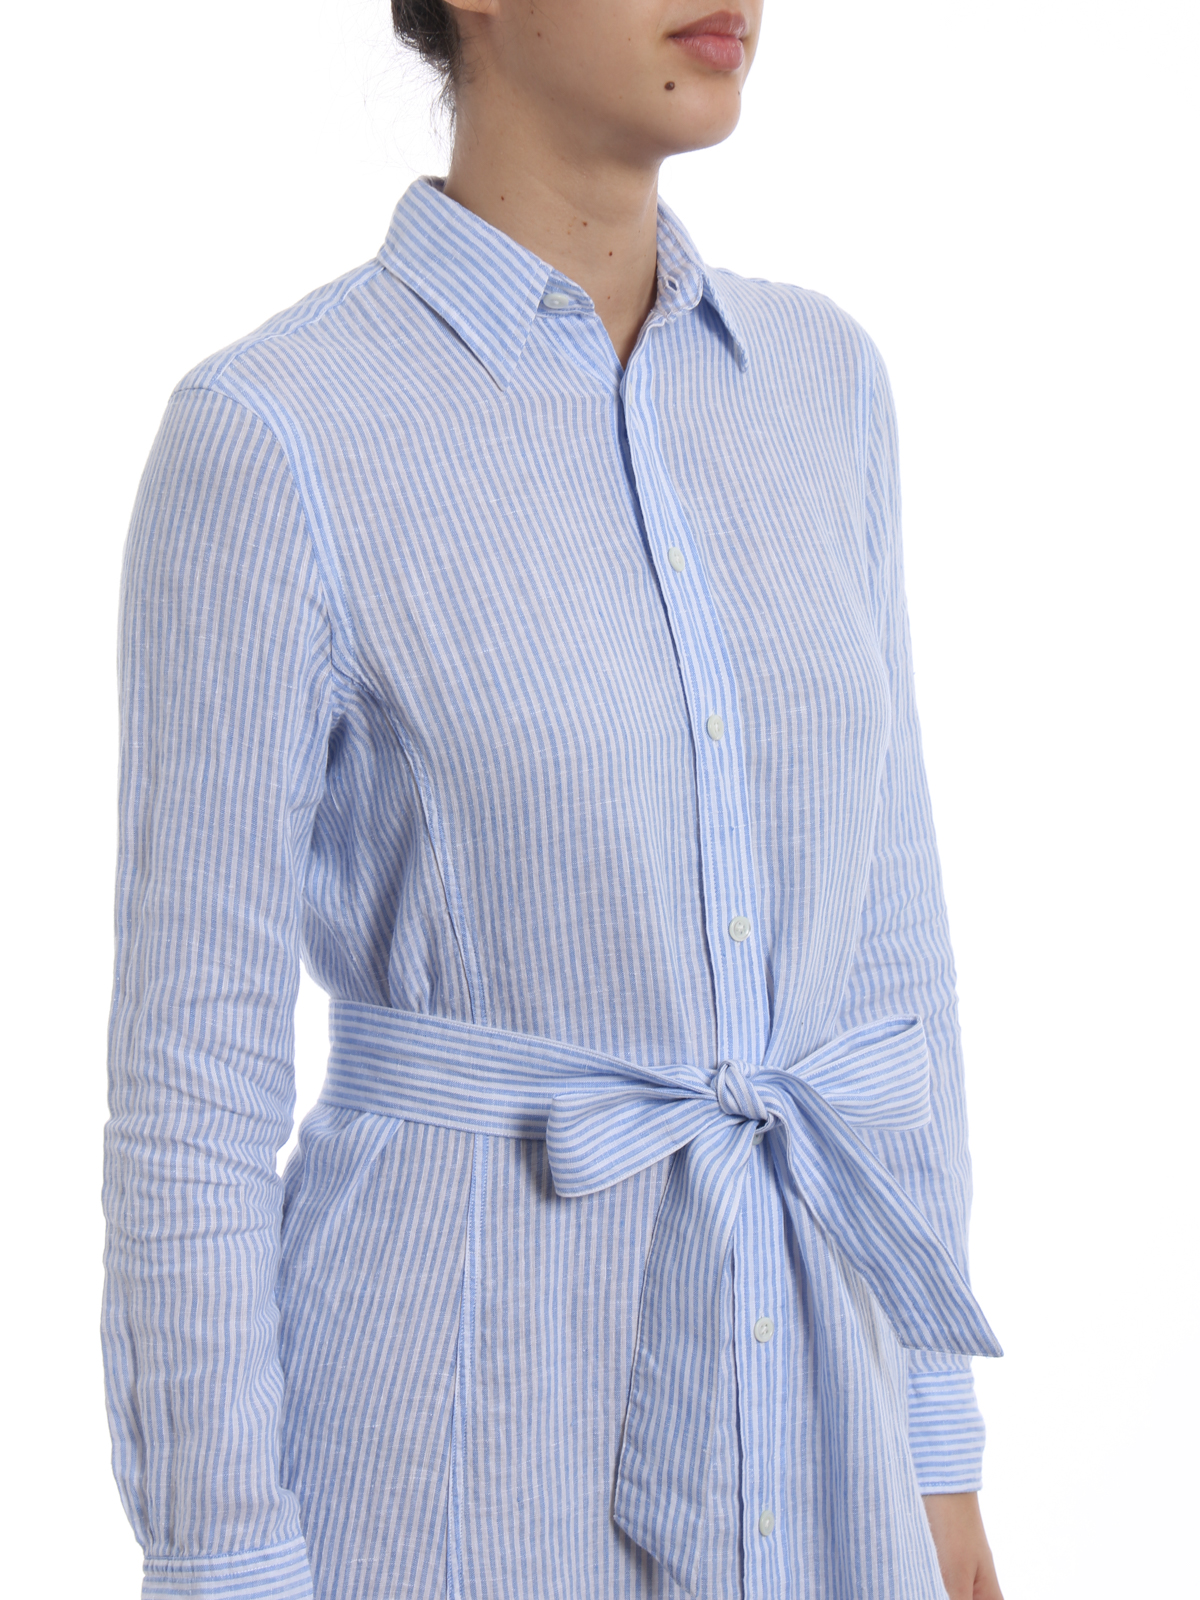 polo ralph lauren striped linen shirtdress